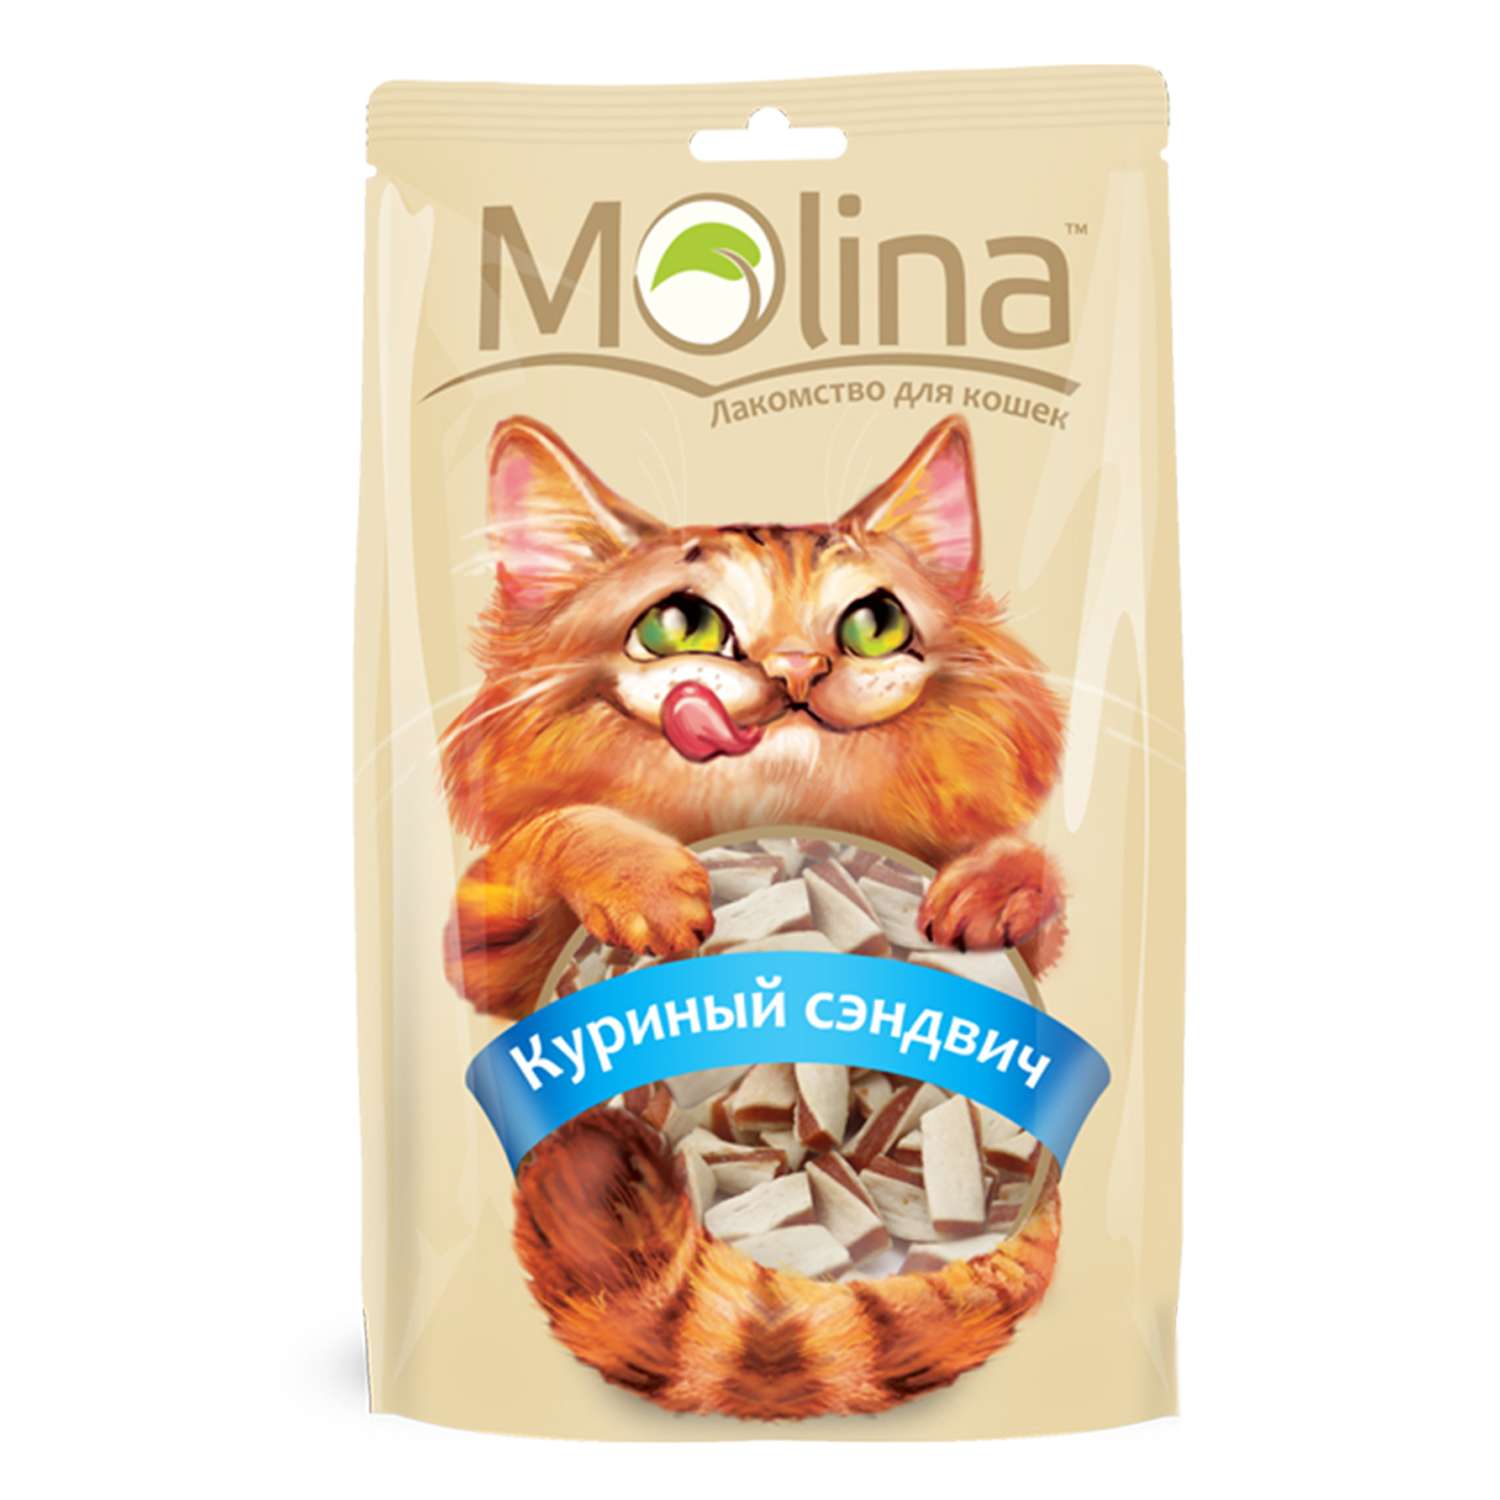 Лакомство для кошек Molina куриный сэндвич 80г - фото 1